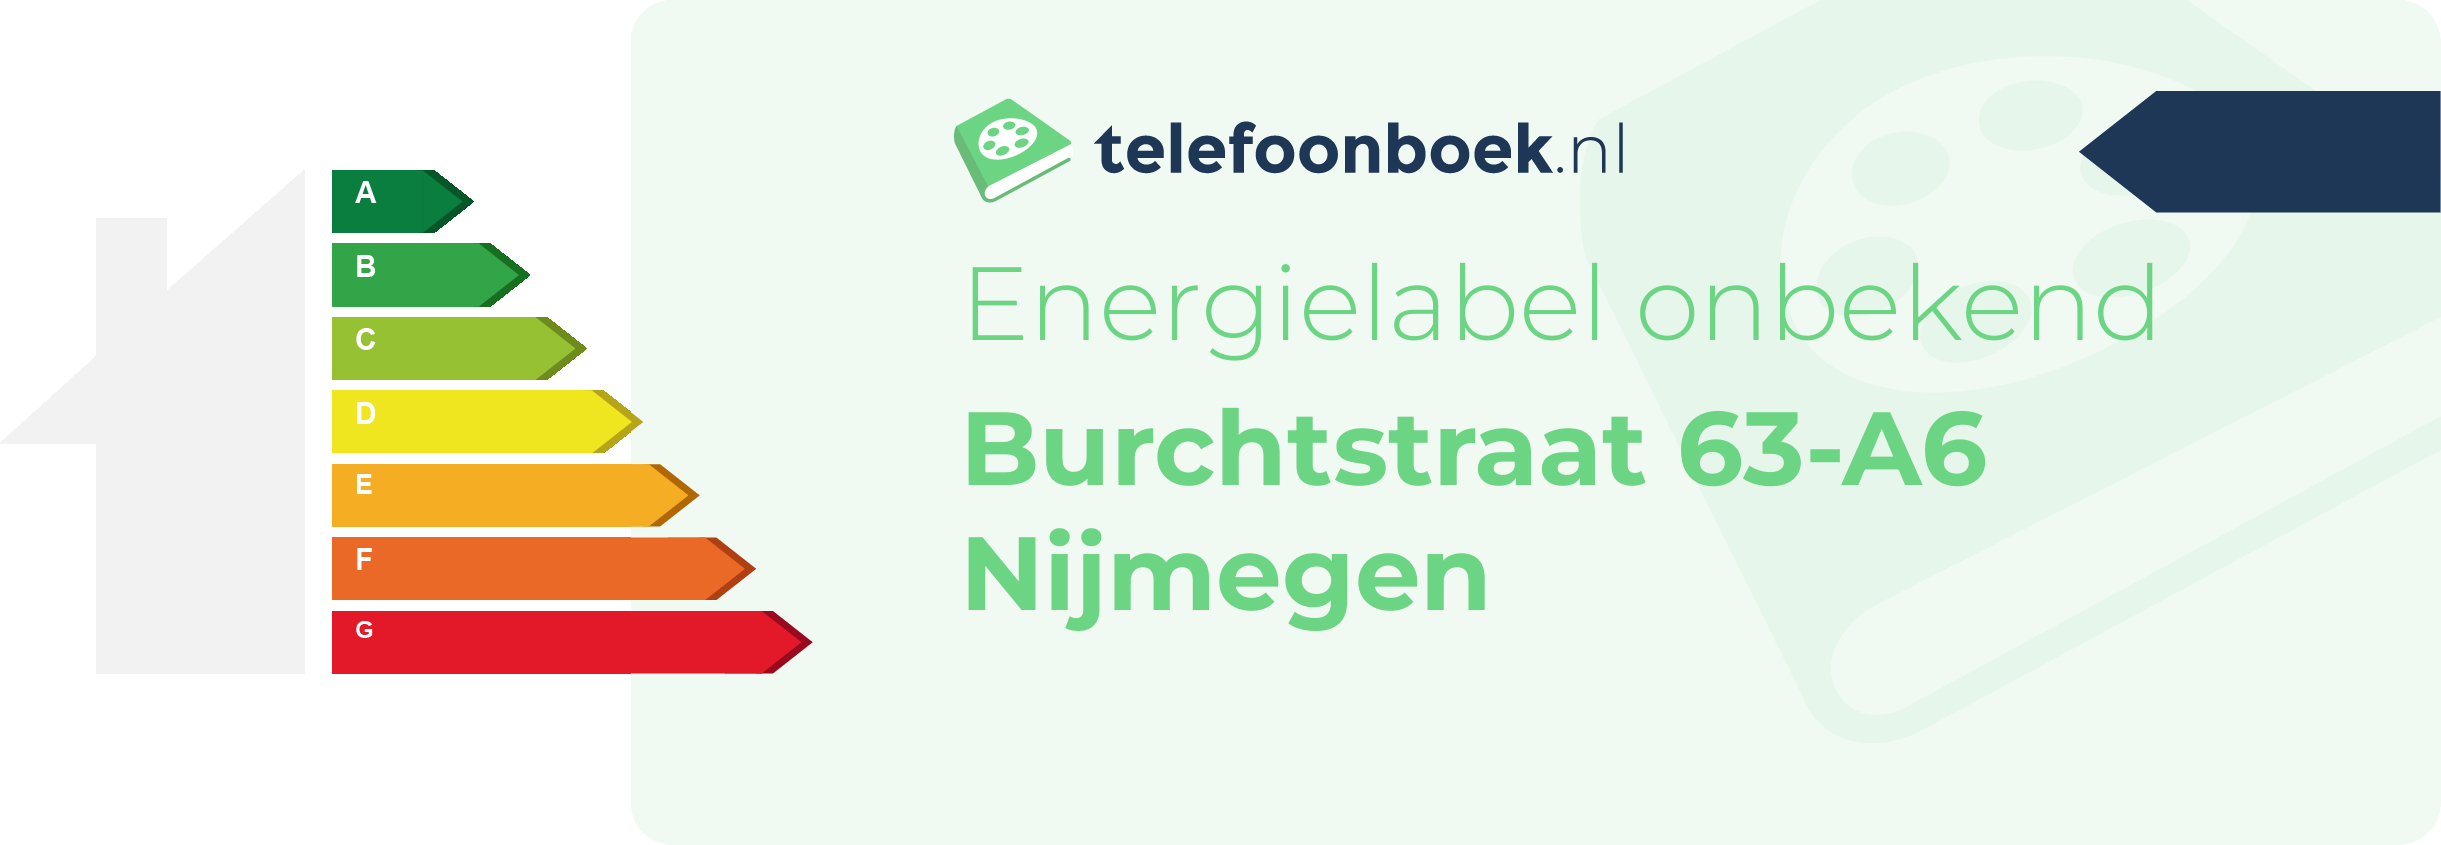 Energielabel Burchtstraat 63-A6 Nijmegen